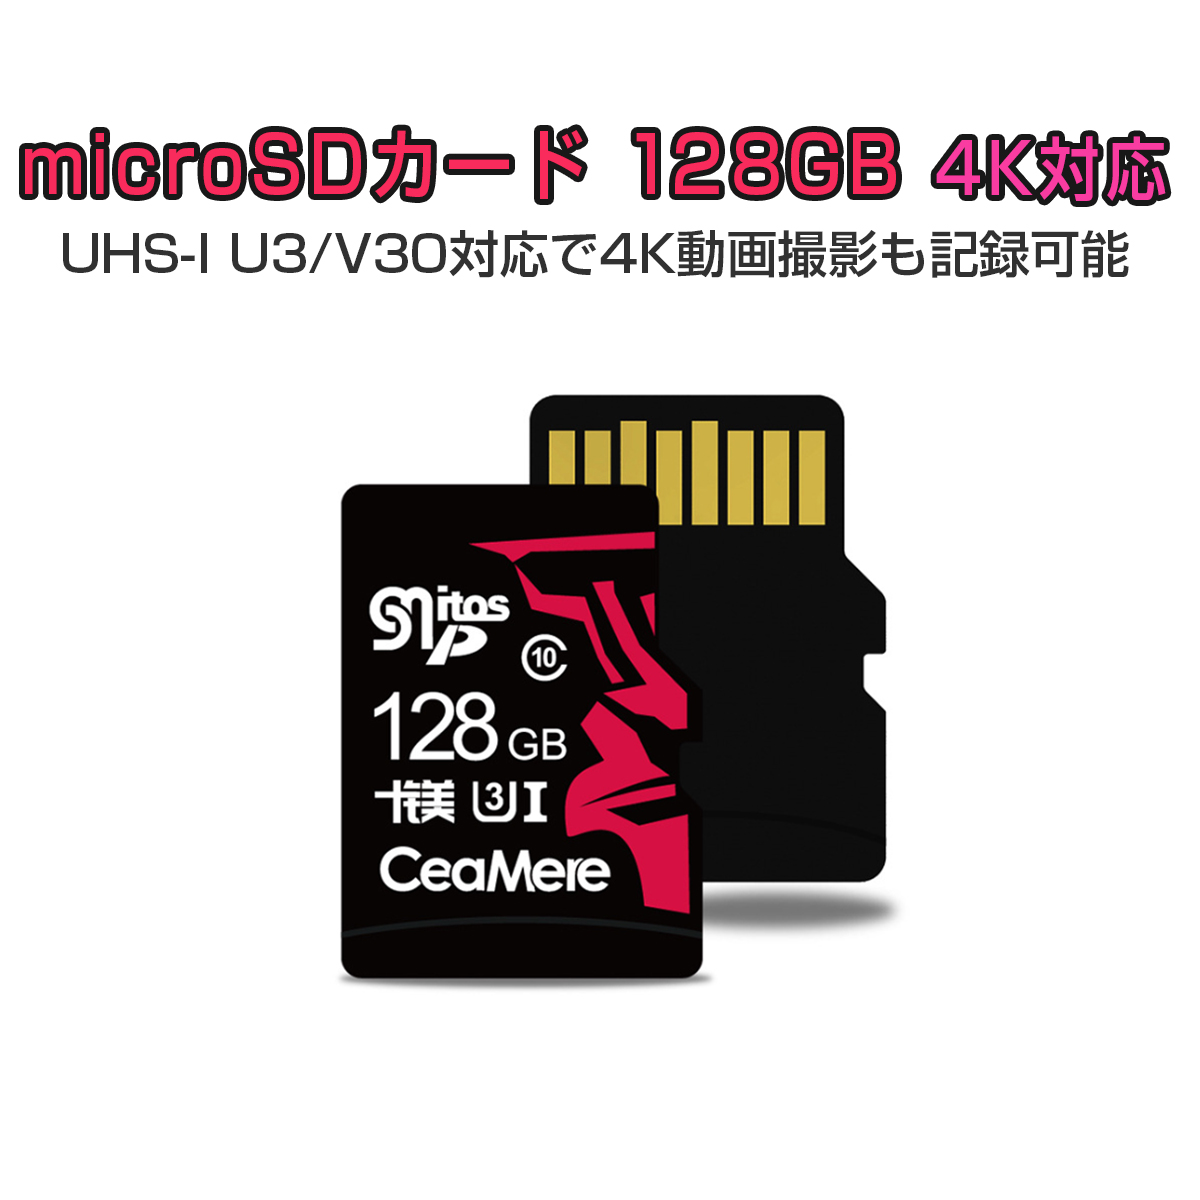 卸売B2B MicroSDカード 128GB UHS-I V30 超高速 最大95MB/sec 3D MLC NAND採用 ASチップ 高耐久 MicroSD マイクロSD microSDXC 300x SDカード変換アダプタ USBカードリーダー付き 1年保証 K&M